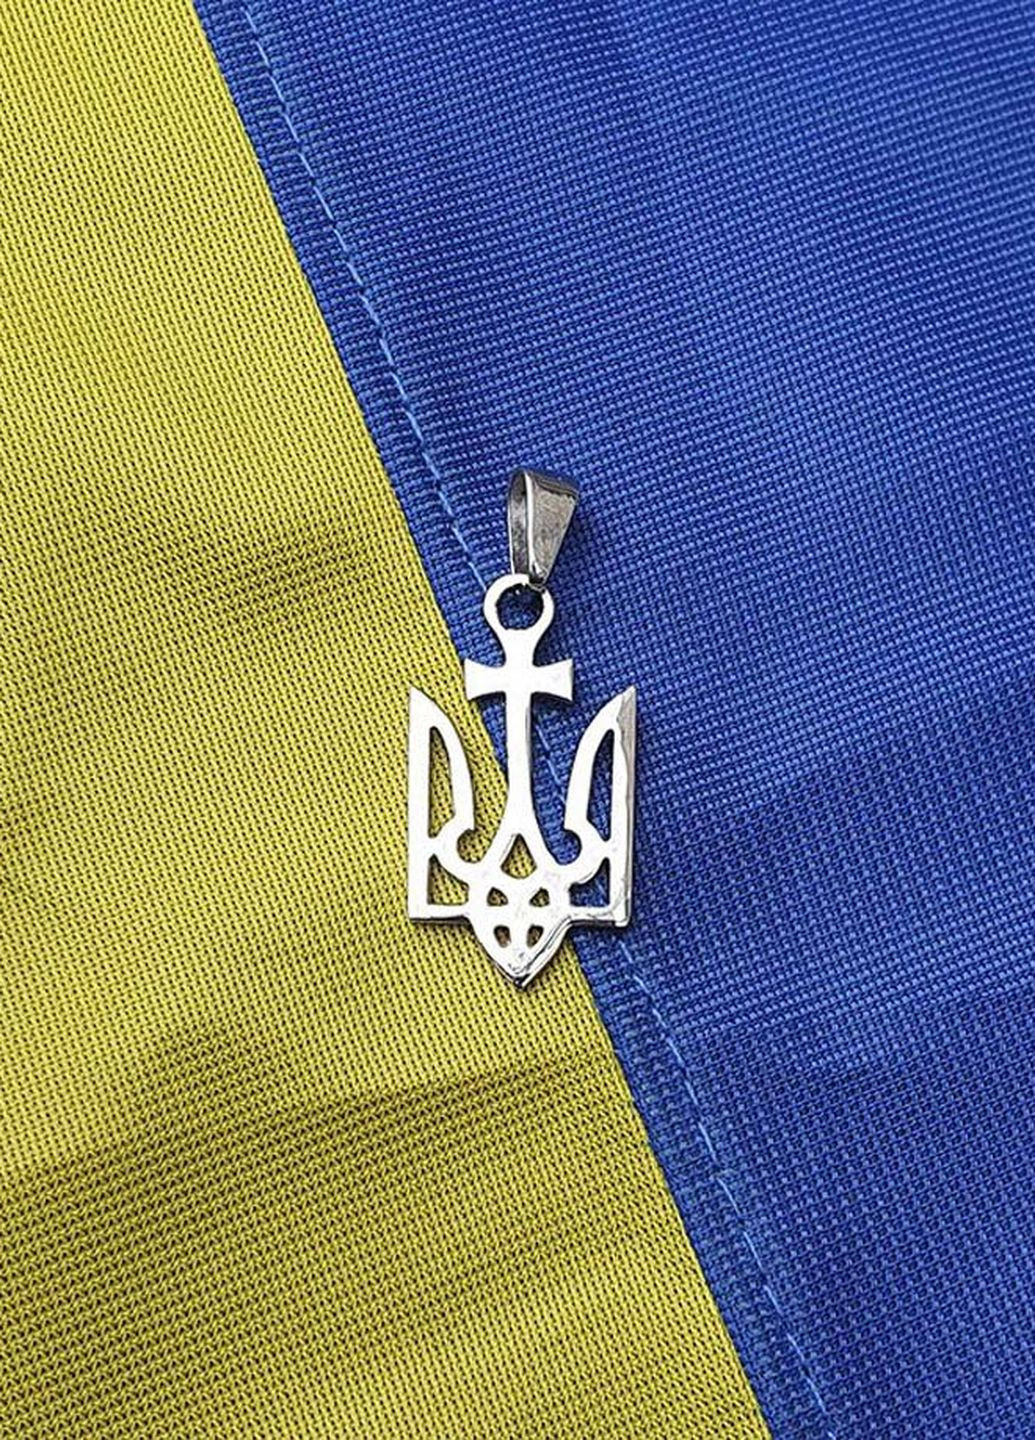 Кулон герб крест 9077 Maxi Silver (277756779)